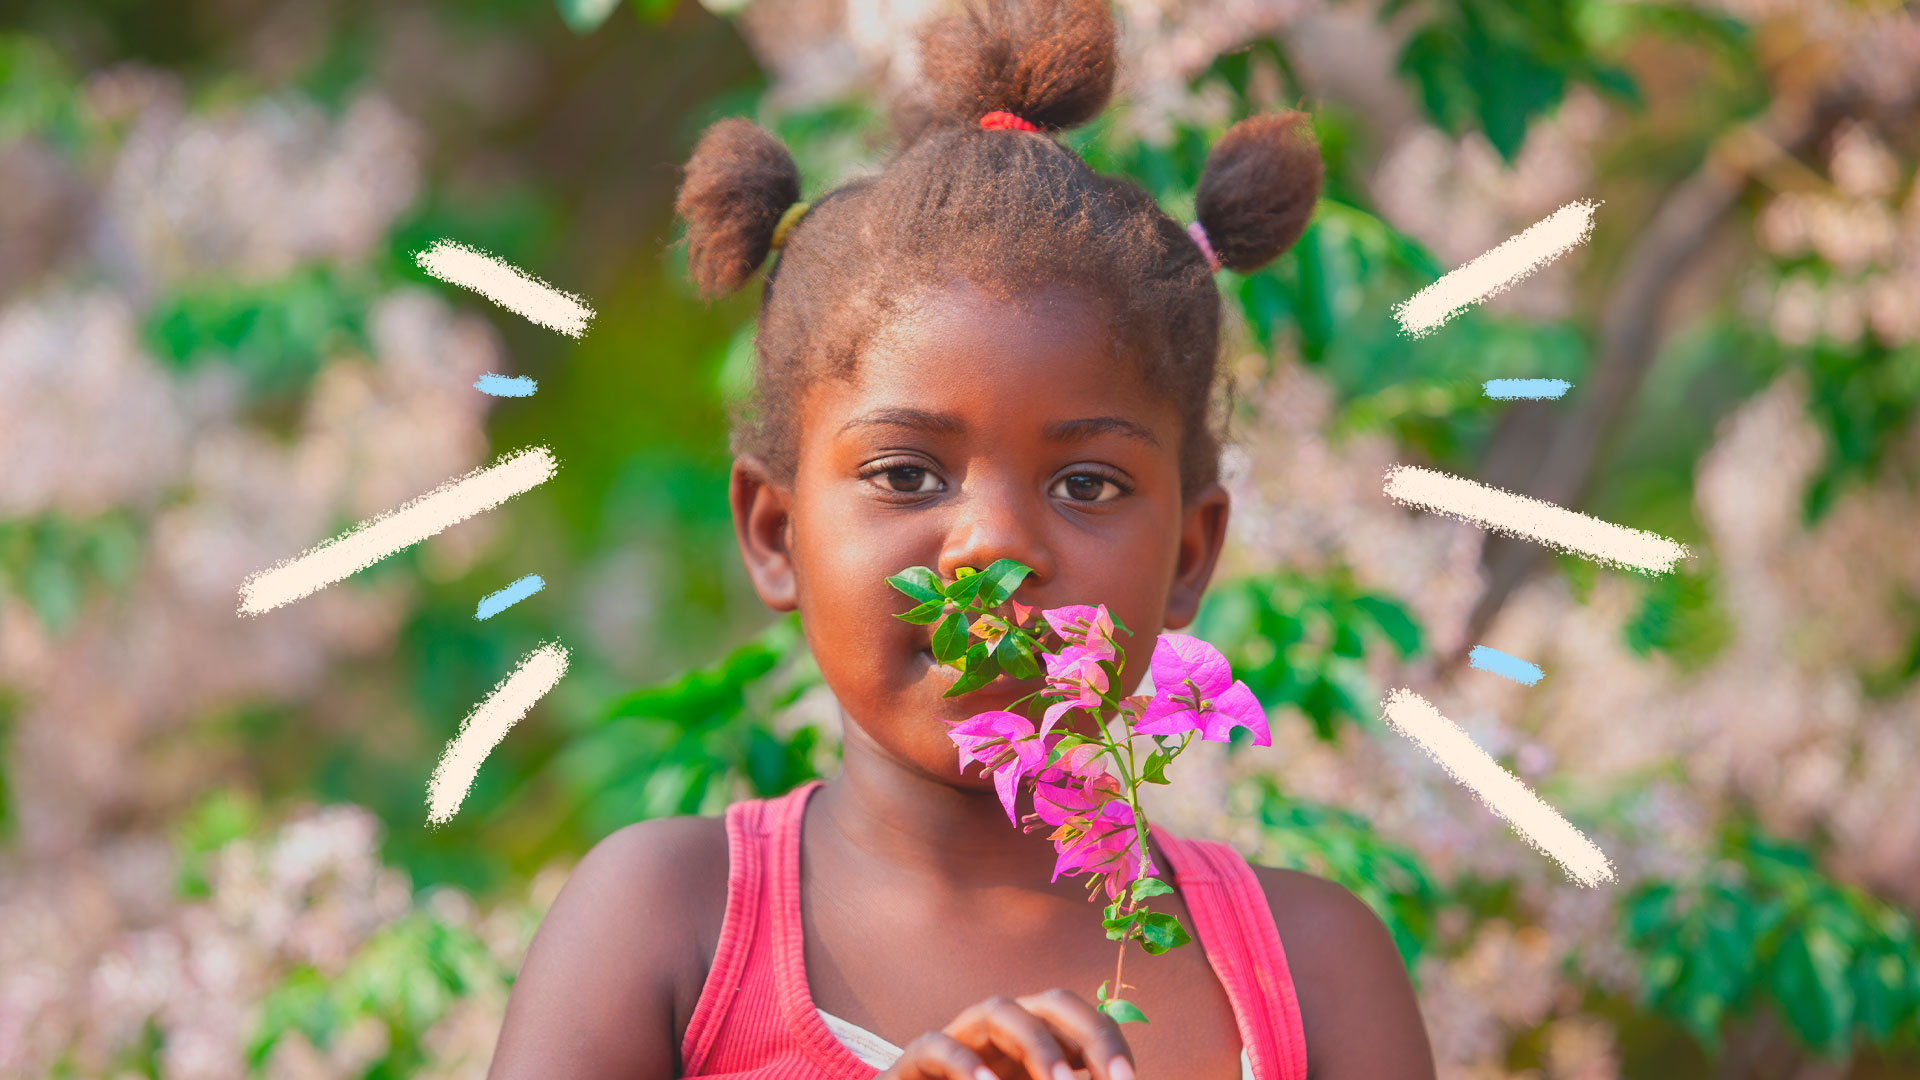 Uma menina com o cabelo preso em três partes segura um ramo de primavera em frente ao rosto. A matéria é sobre brincadeiras com elementos da natureza